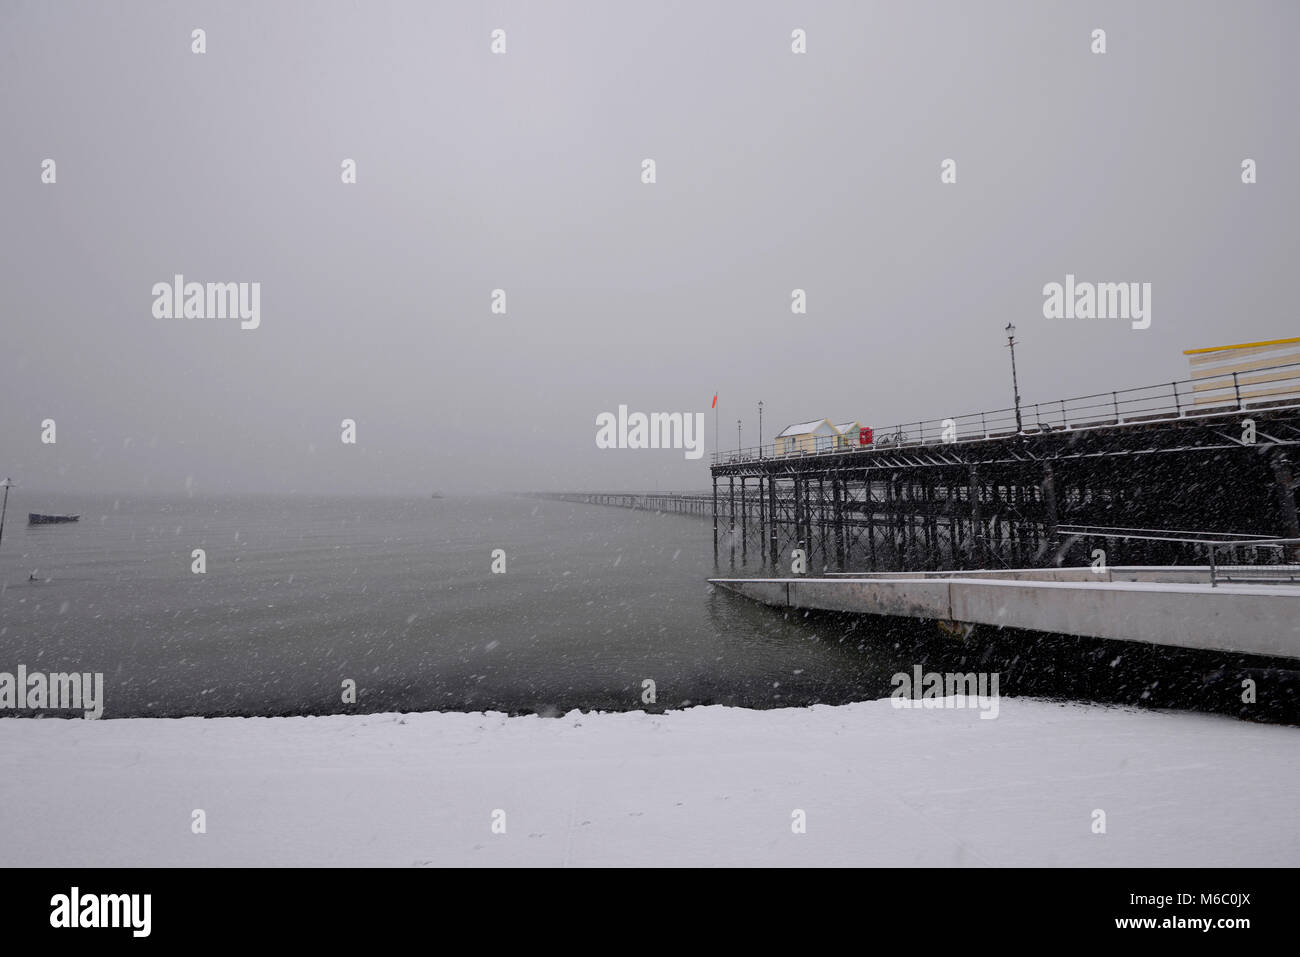 Southend Pier couvert de neige et plage avec nuages de neige. Neige. Cabanes colorées. Jambes en fer. Bateau Banque D'Images